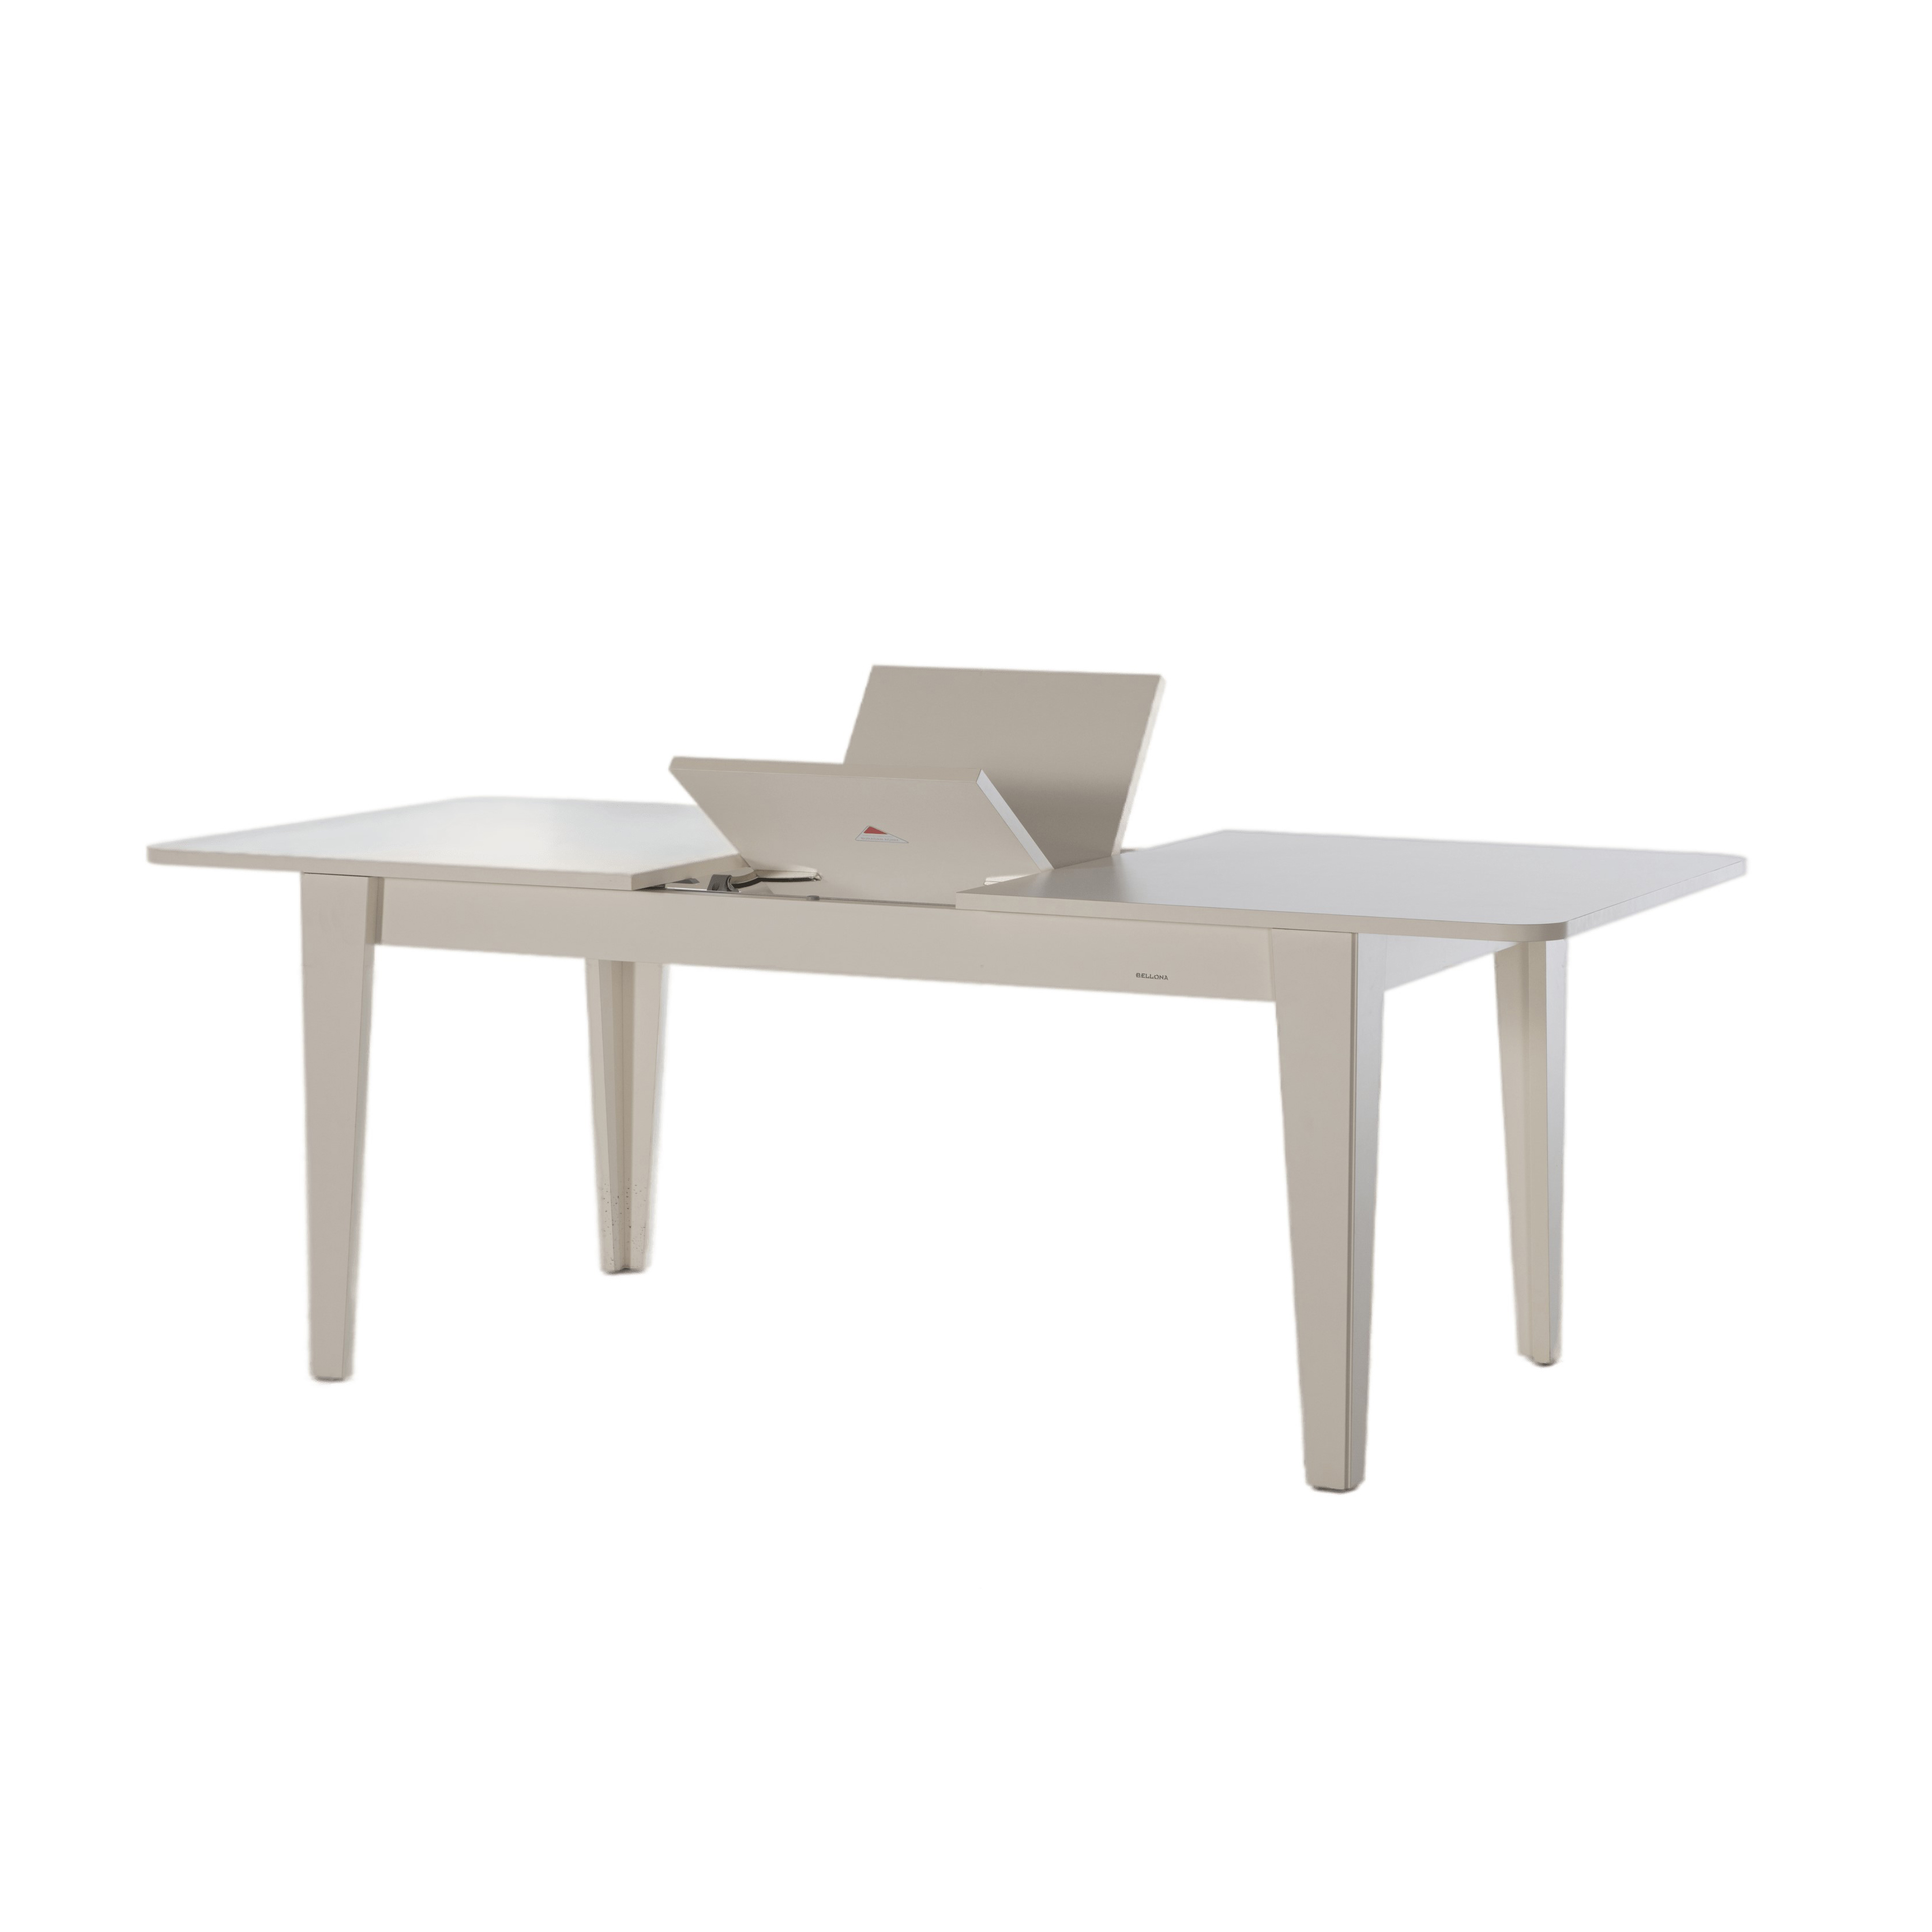 Стол обеденный Bellona Vilza, раскладной, размер 164 (204)x90x77 см (VILZ-14)VILZ-14